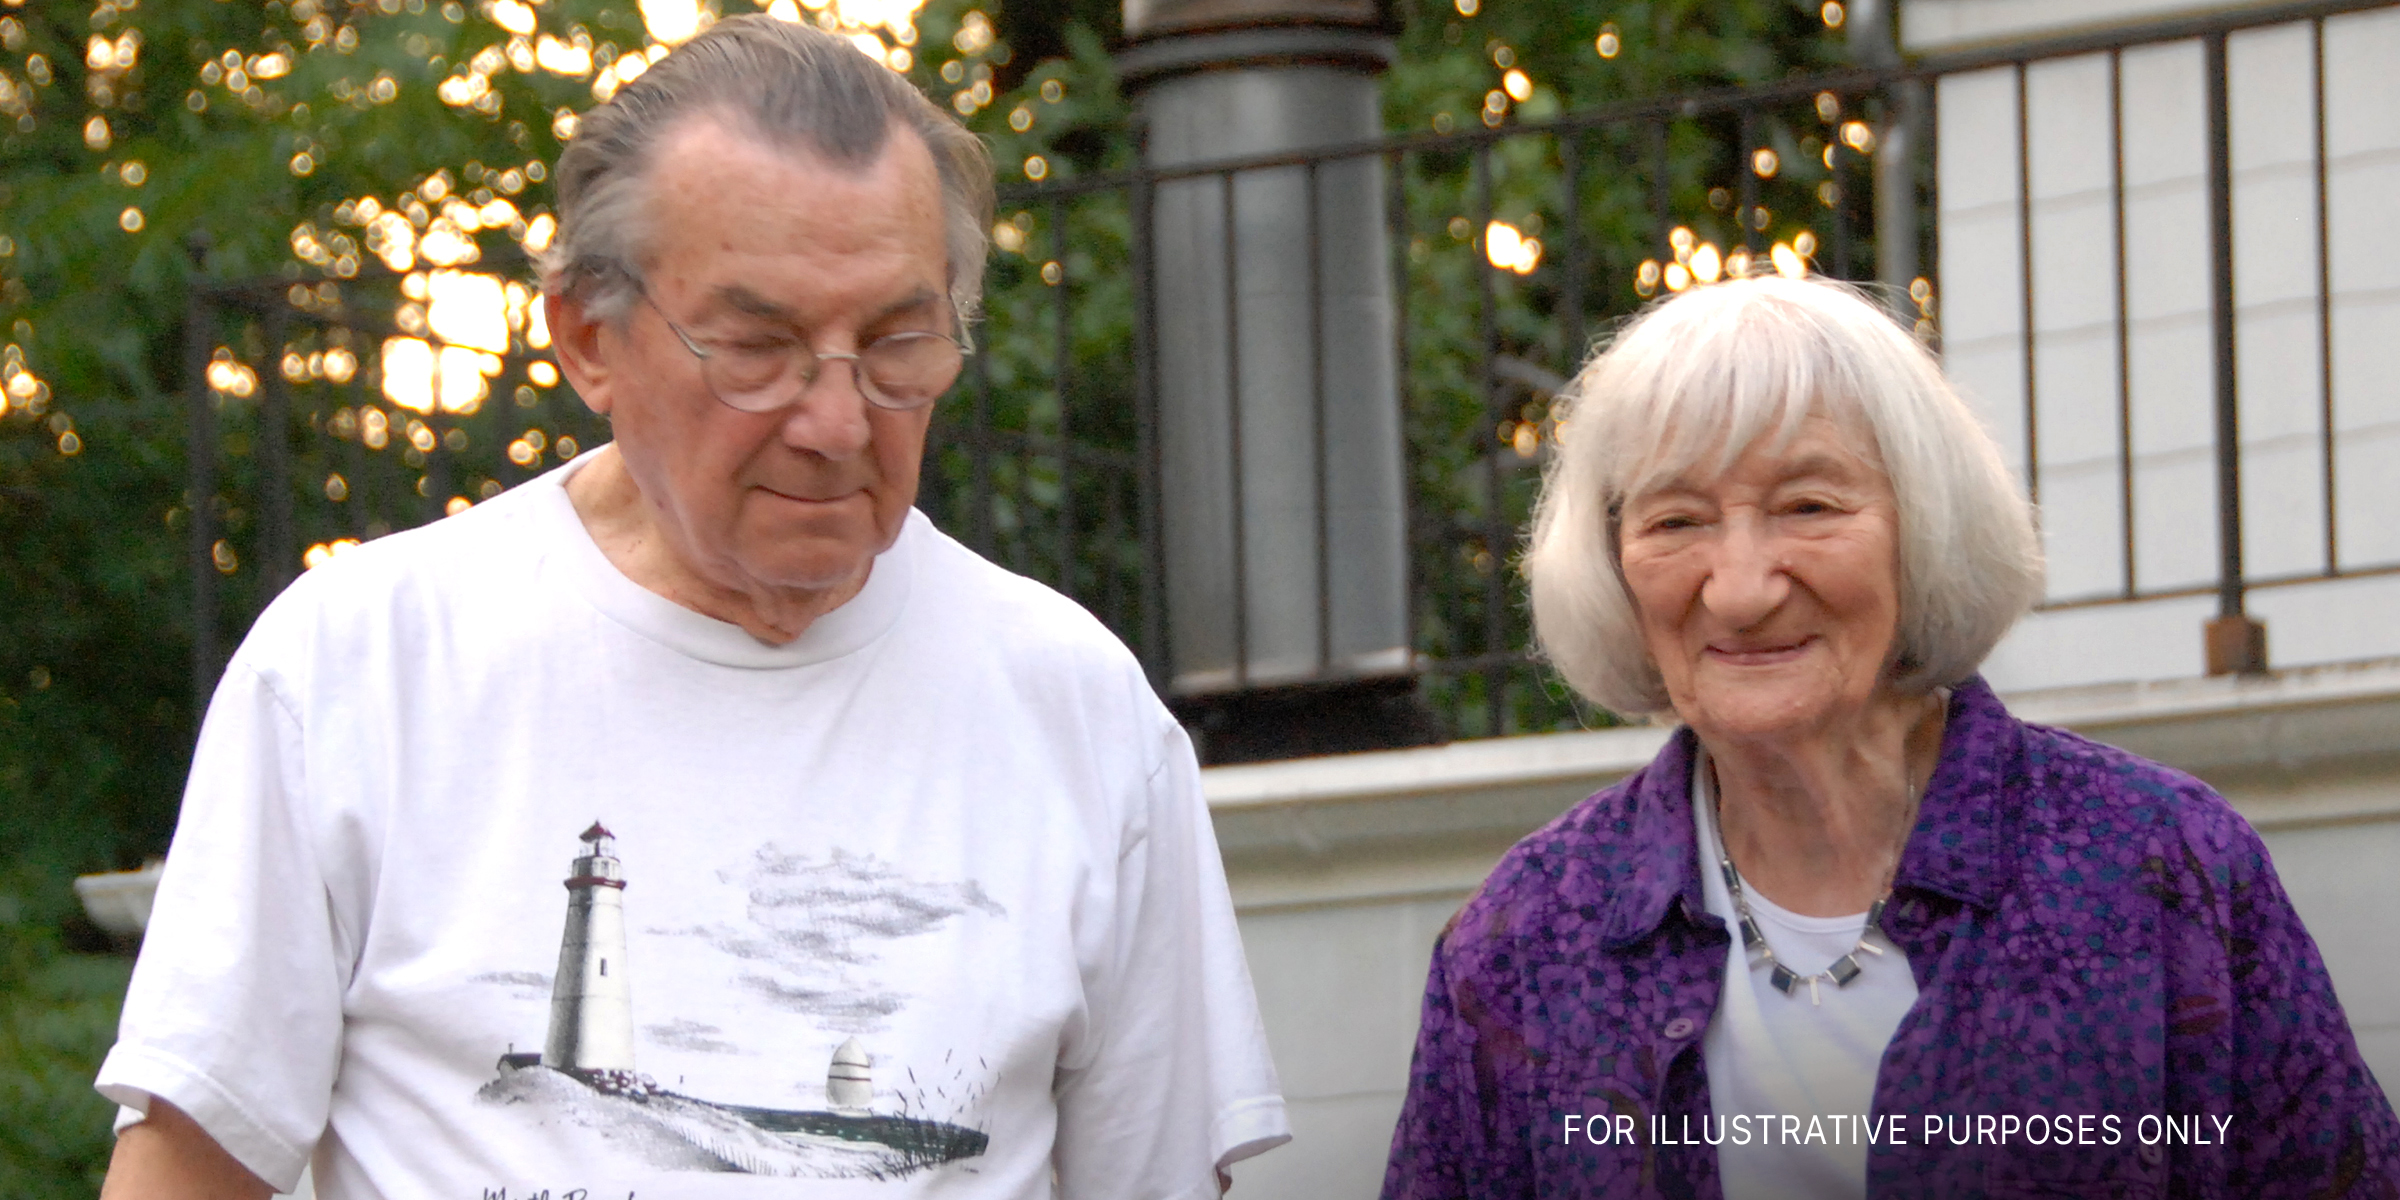 Ein älteres Ehepaar | Quelle: Flickr.com/mikegoren/CC BY 2.0